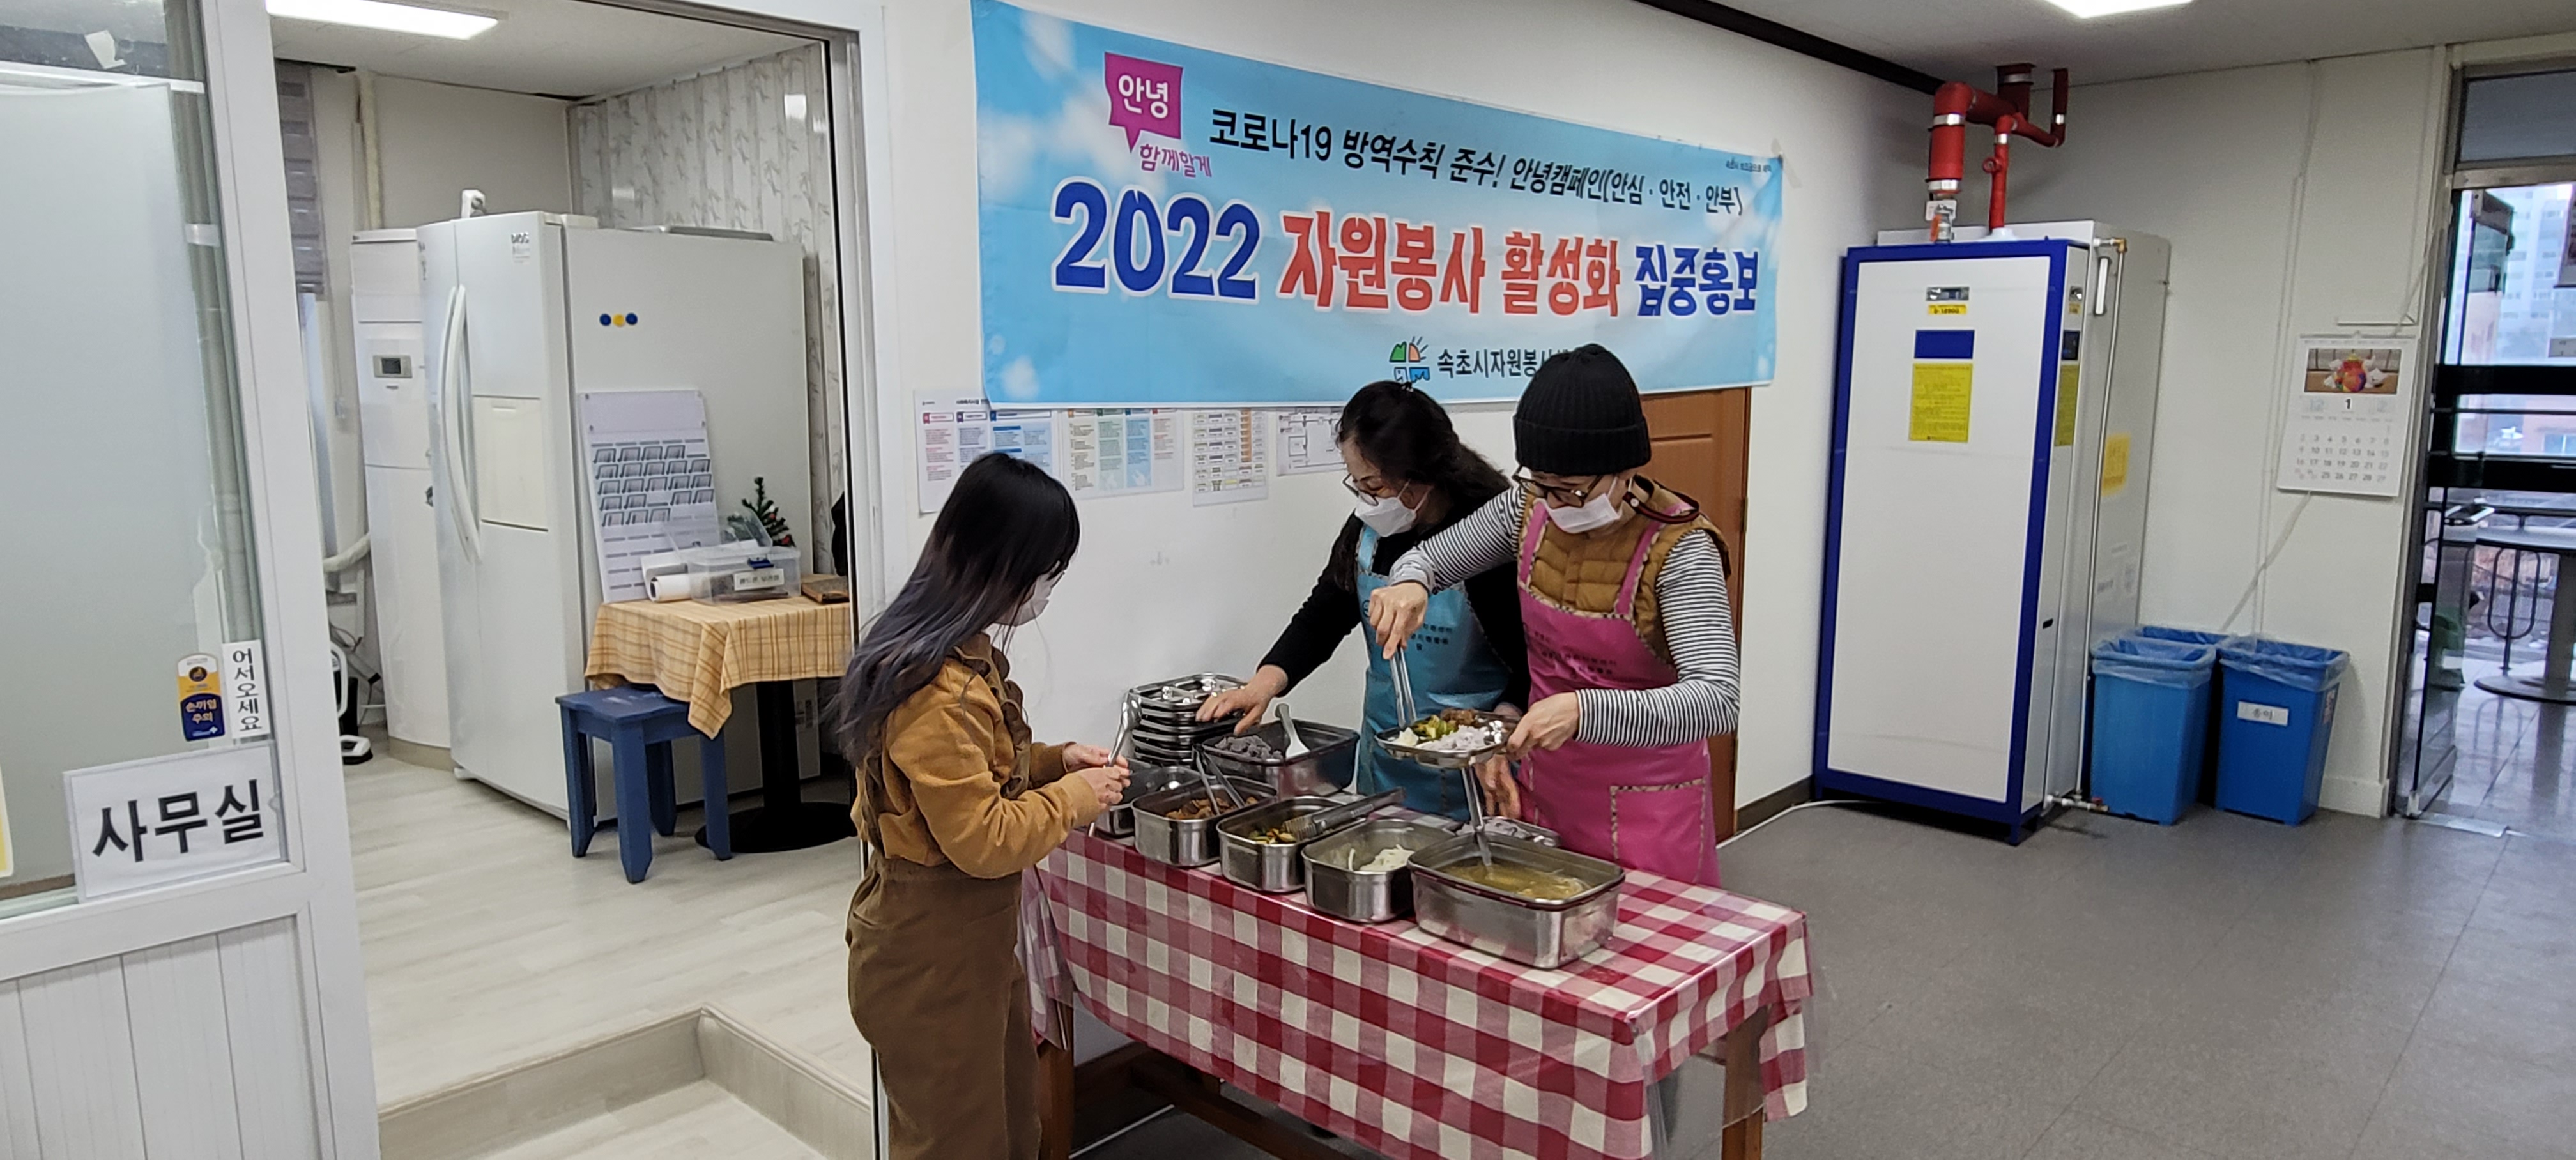 2022 자원봉사 활성화 집중홍보 봉사활동